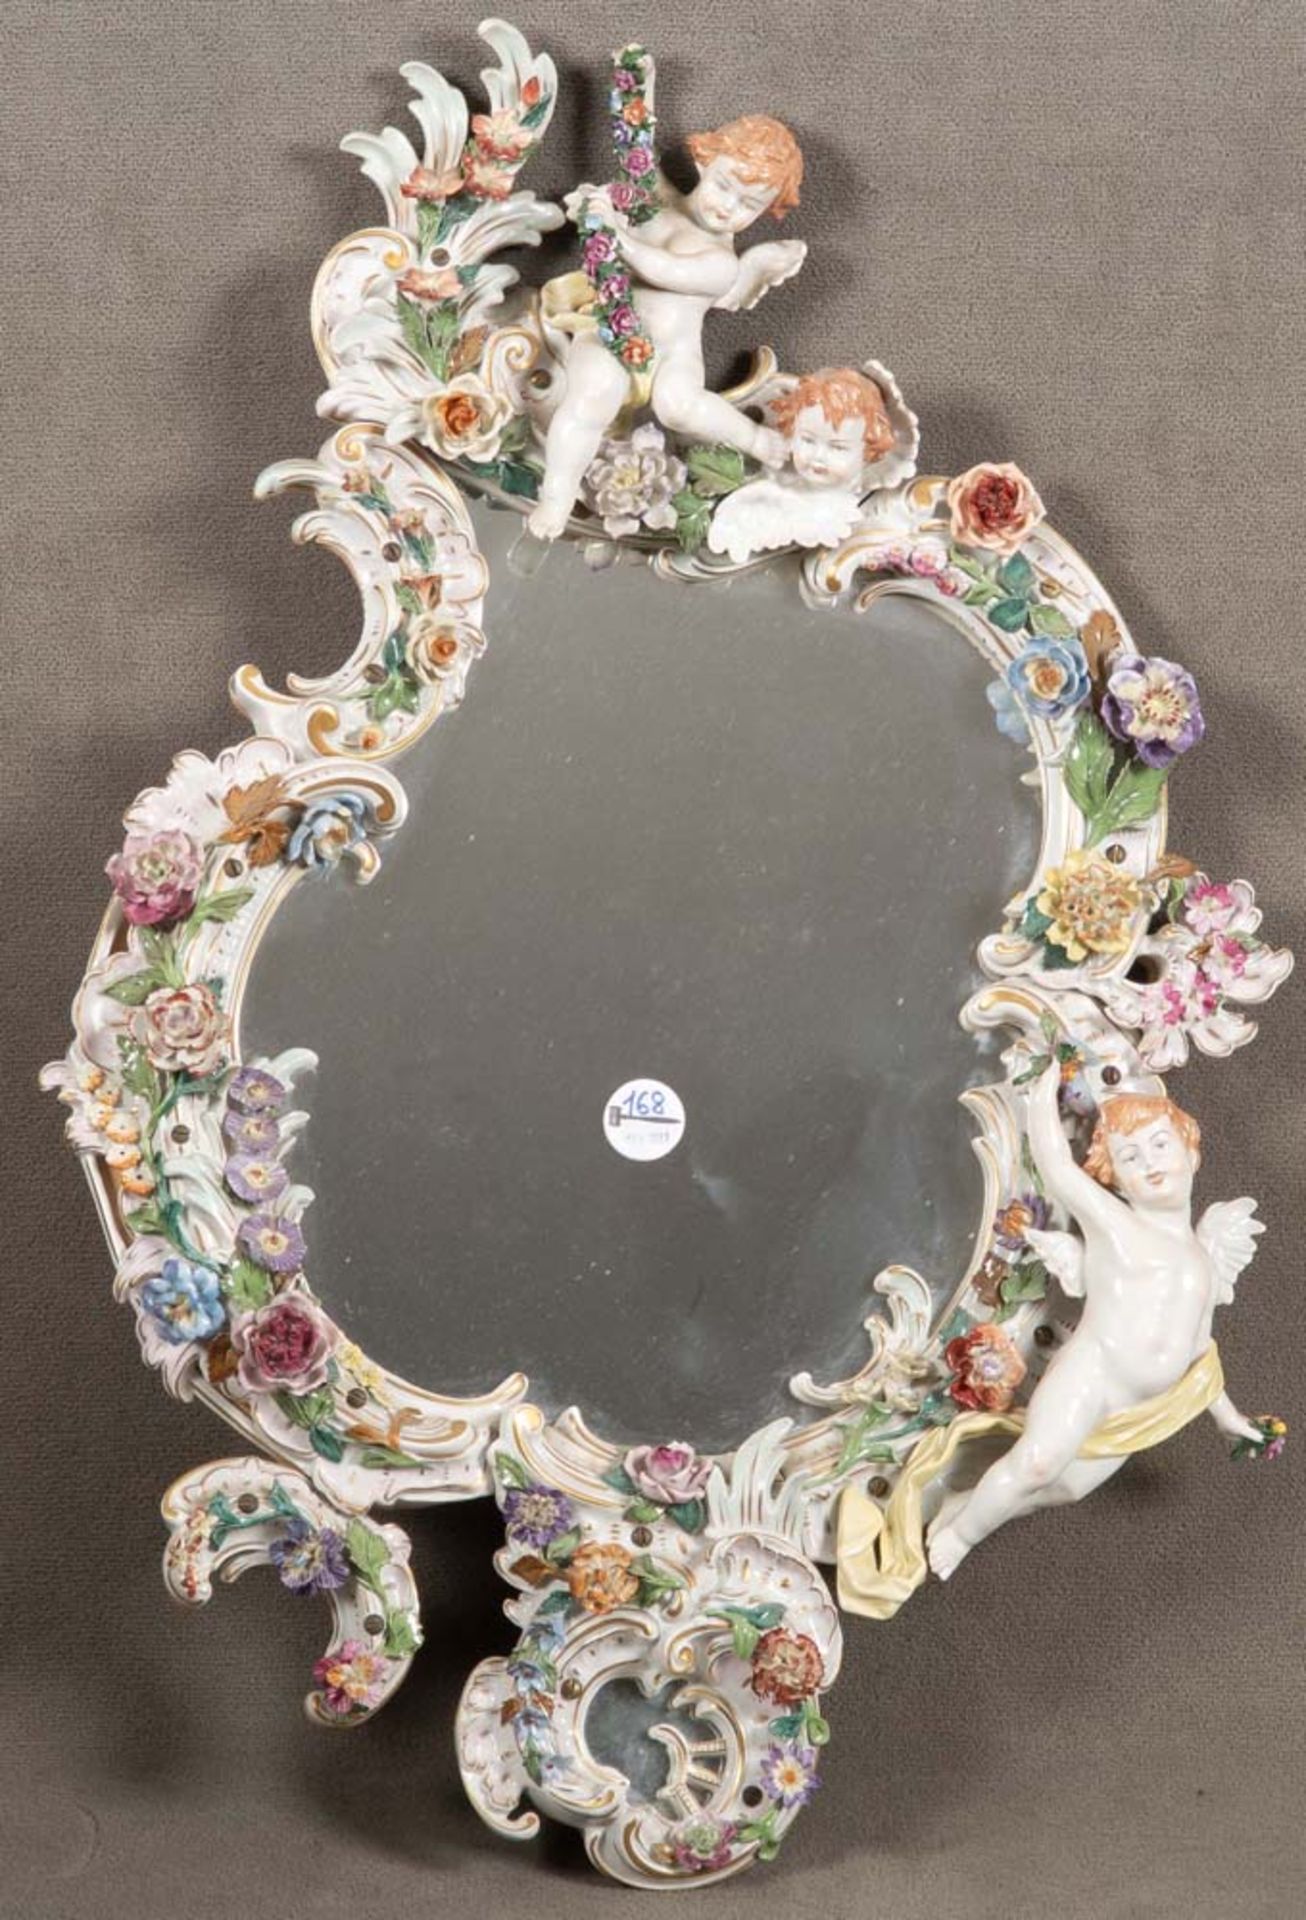 Wandspiegel. Thüringen 19. Jh. Porzellan, bunt bemalt, aufwendig modelliert mit Blüten und Putten,